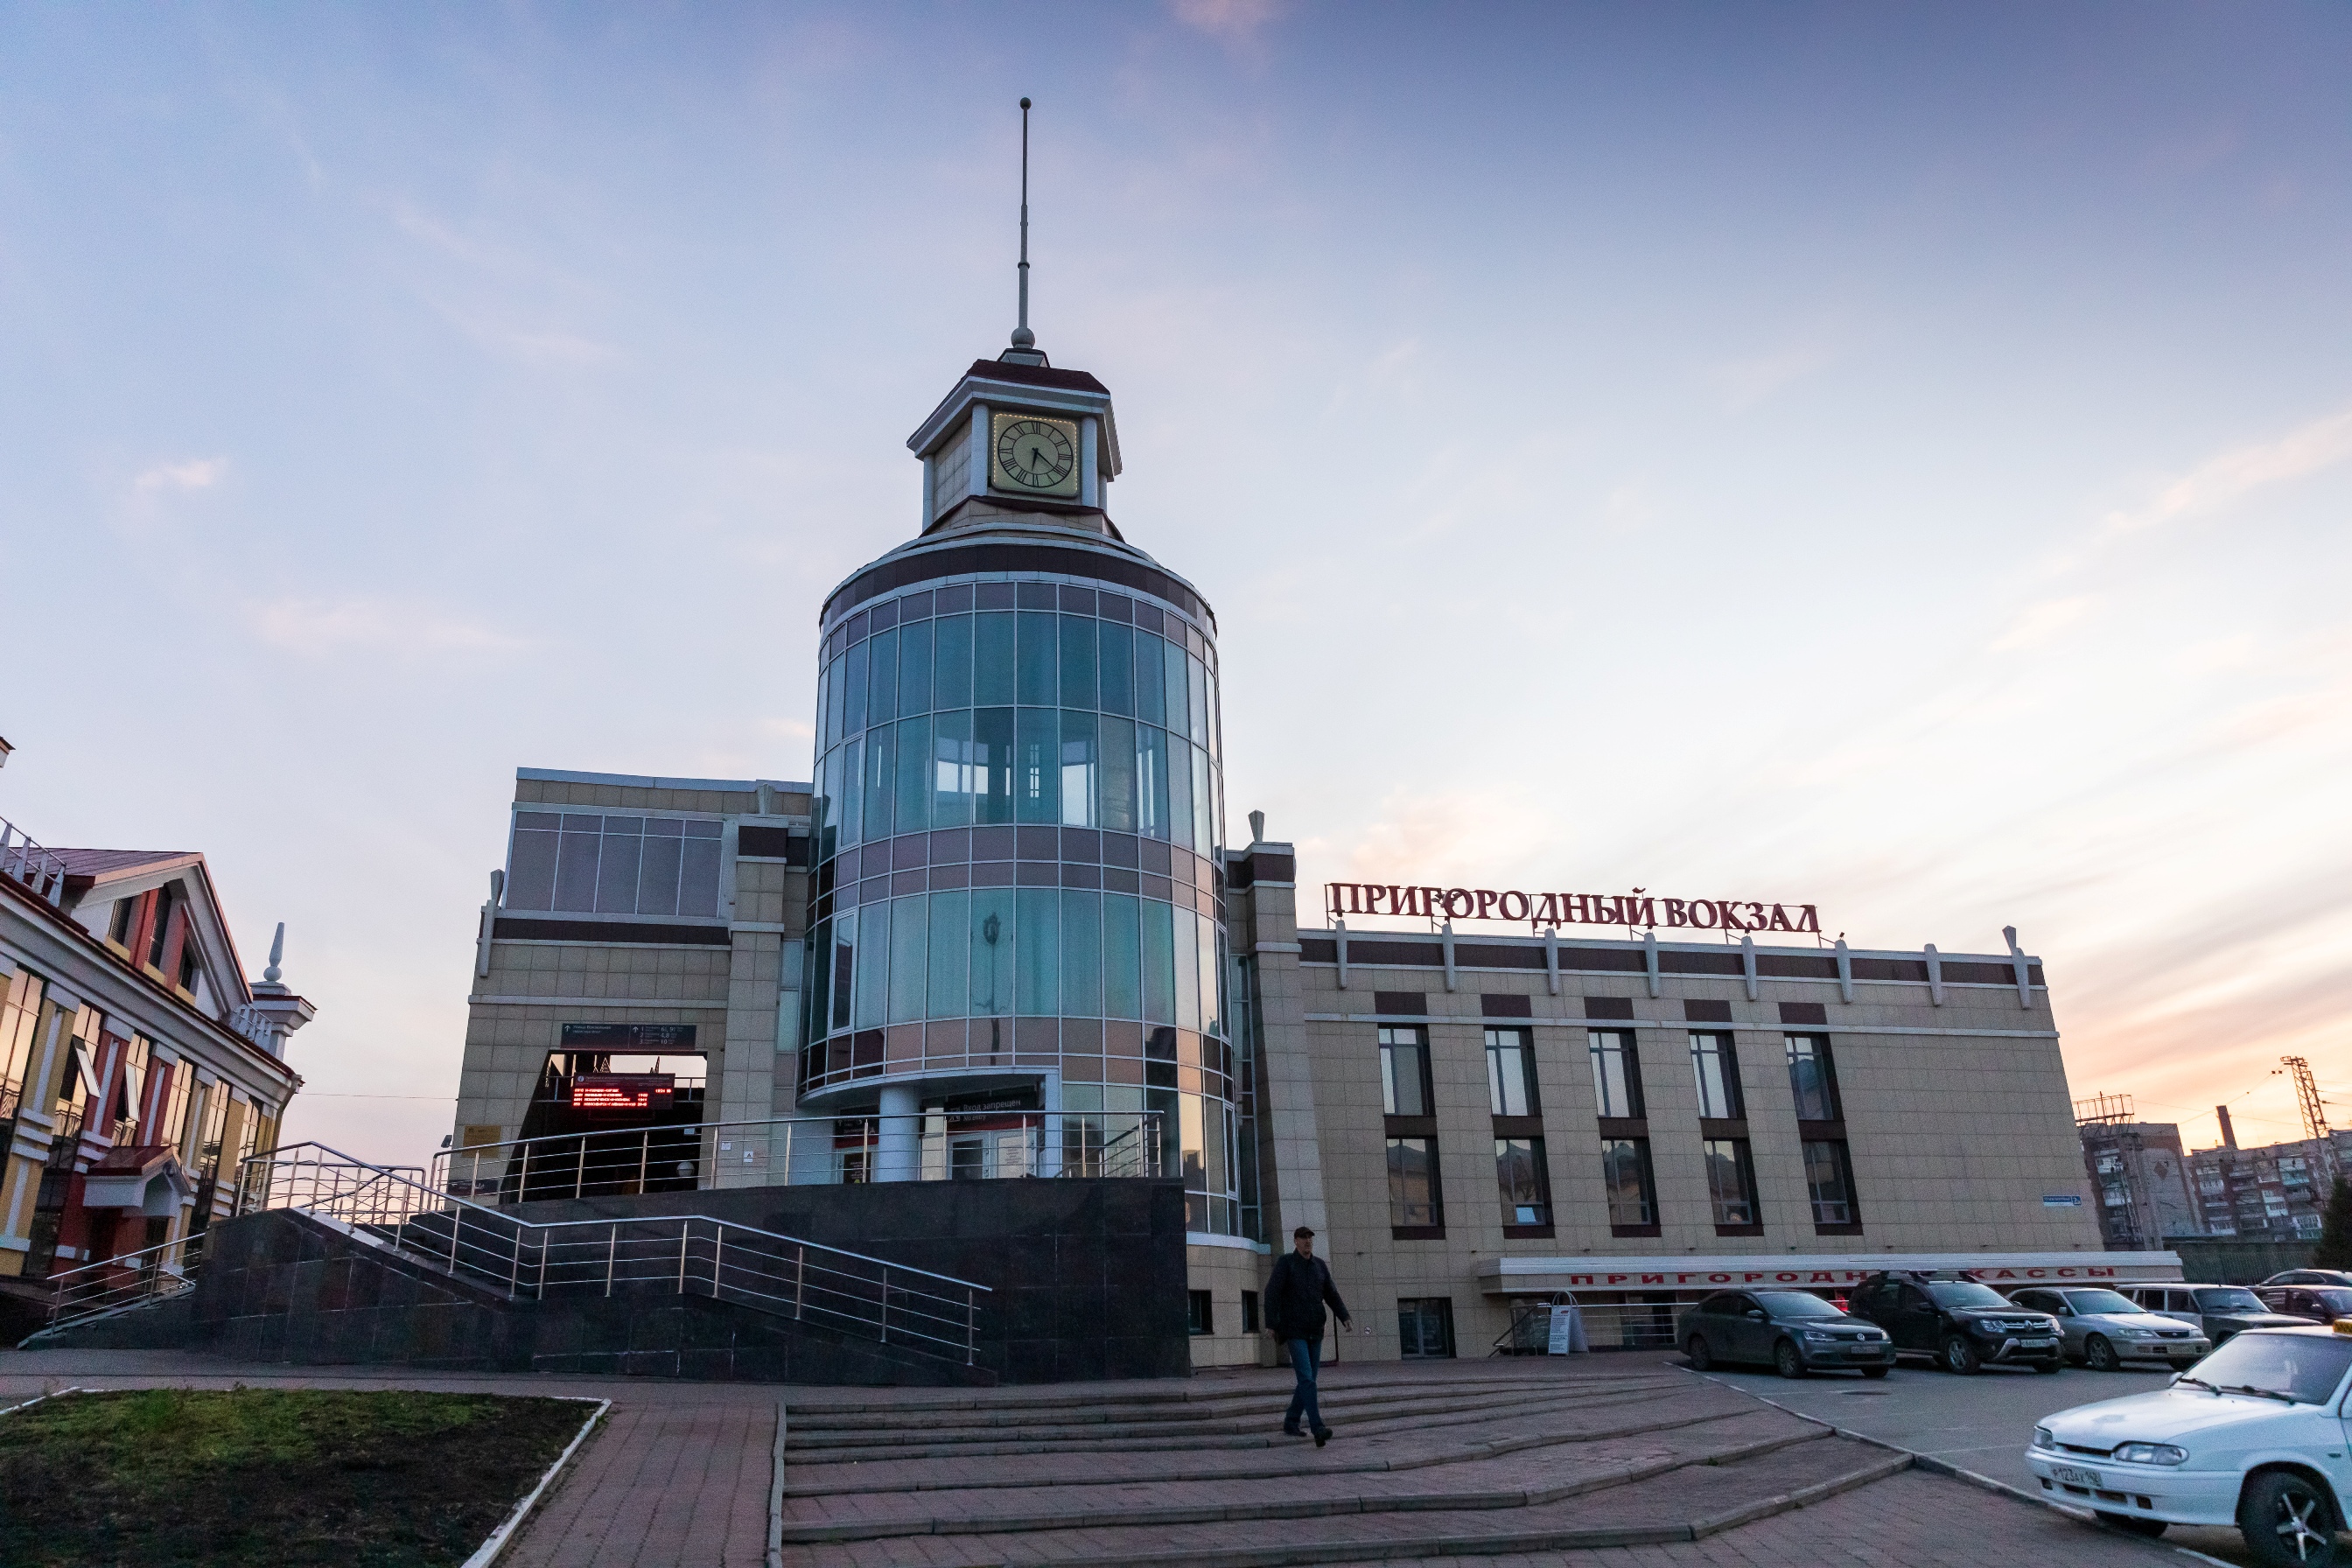 Пригородный вокзал Новокузнецк.jpg